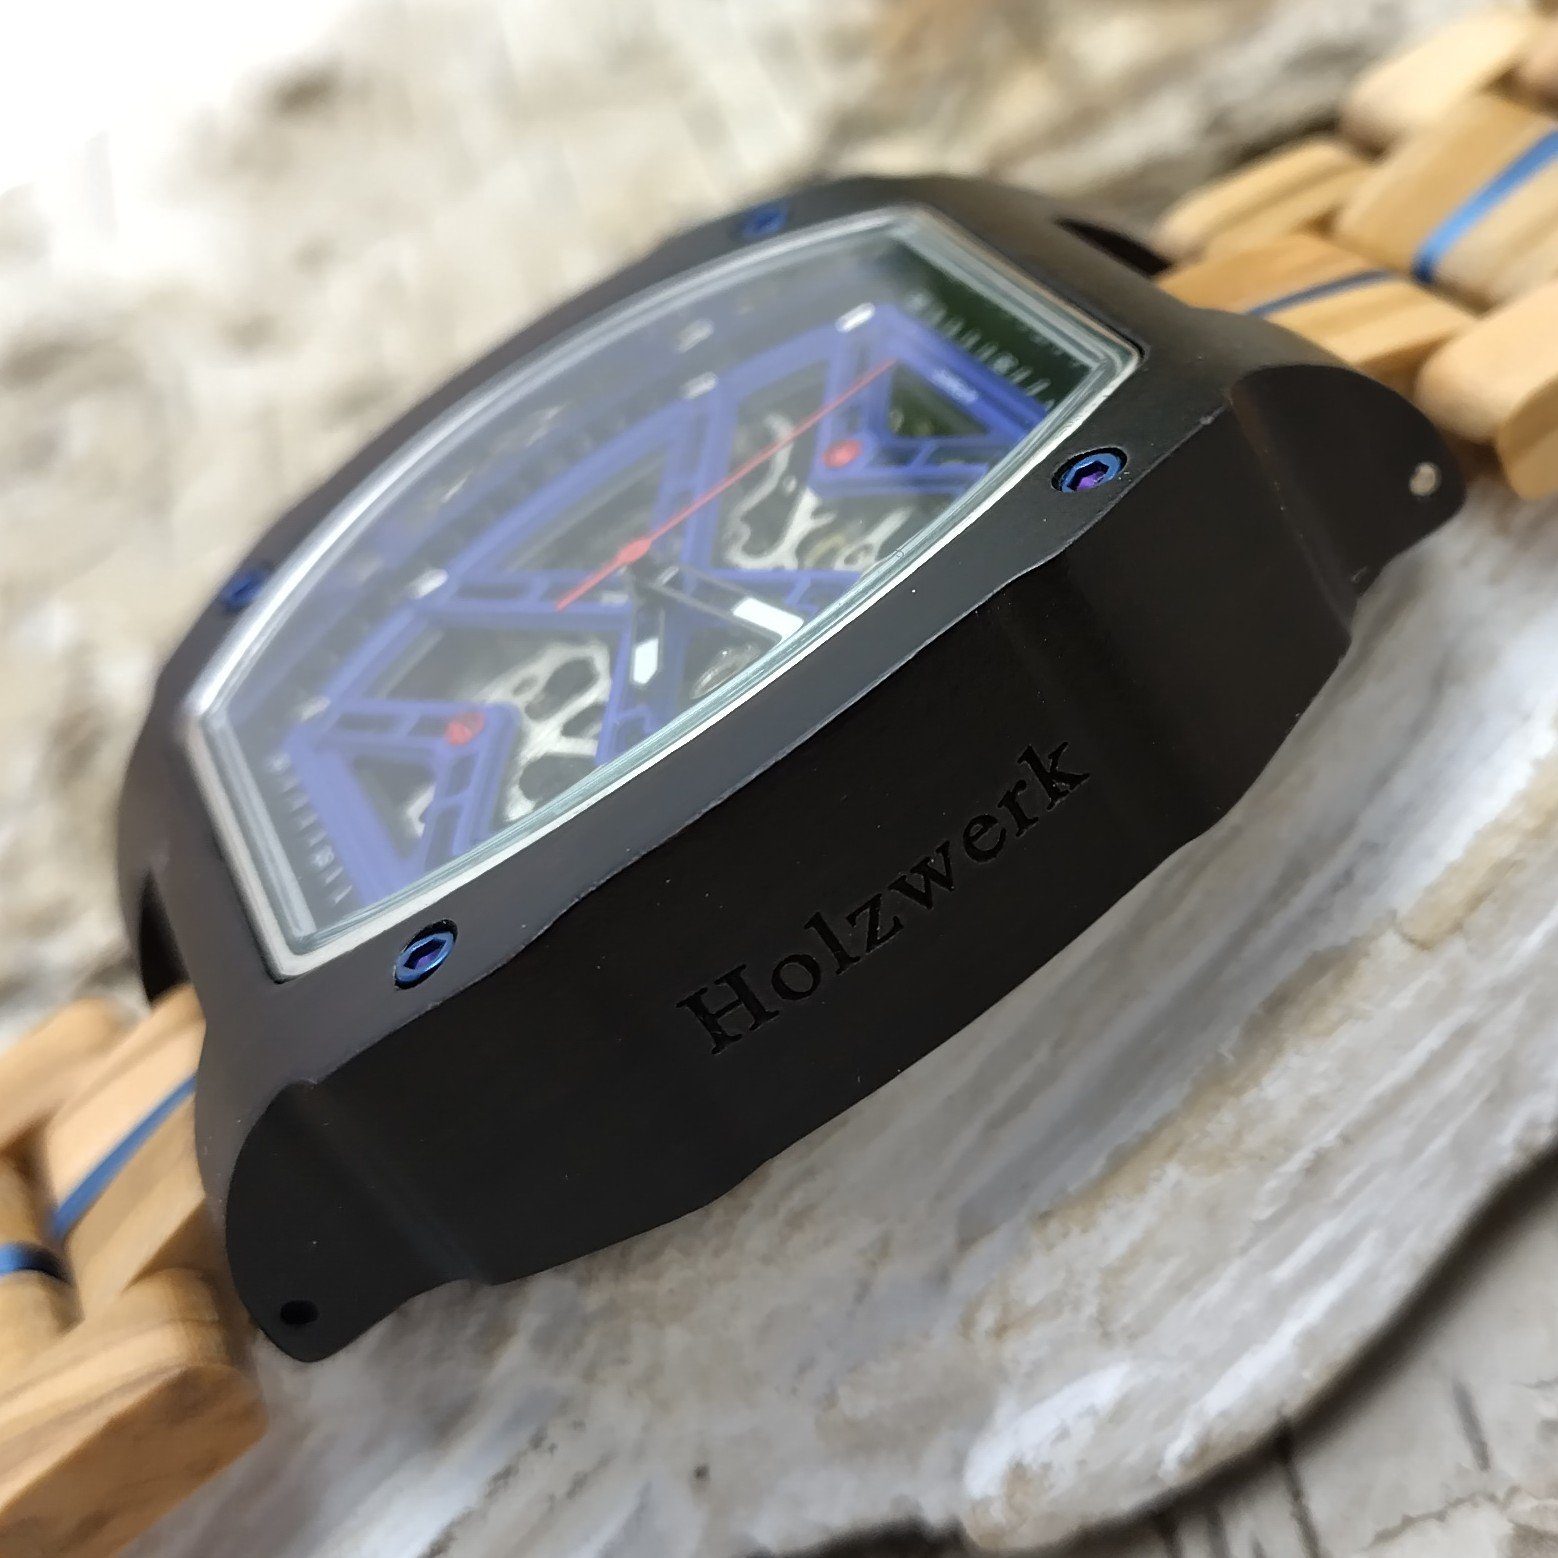 Holzwerk Automatikuhr CASTROP Tonneau Holz Armband Herren in blau schwarz Uhr beige, &